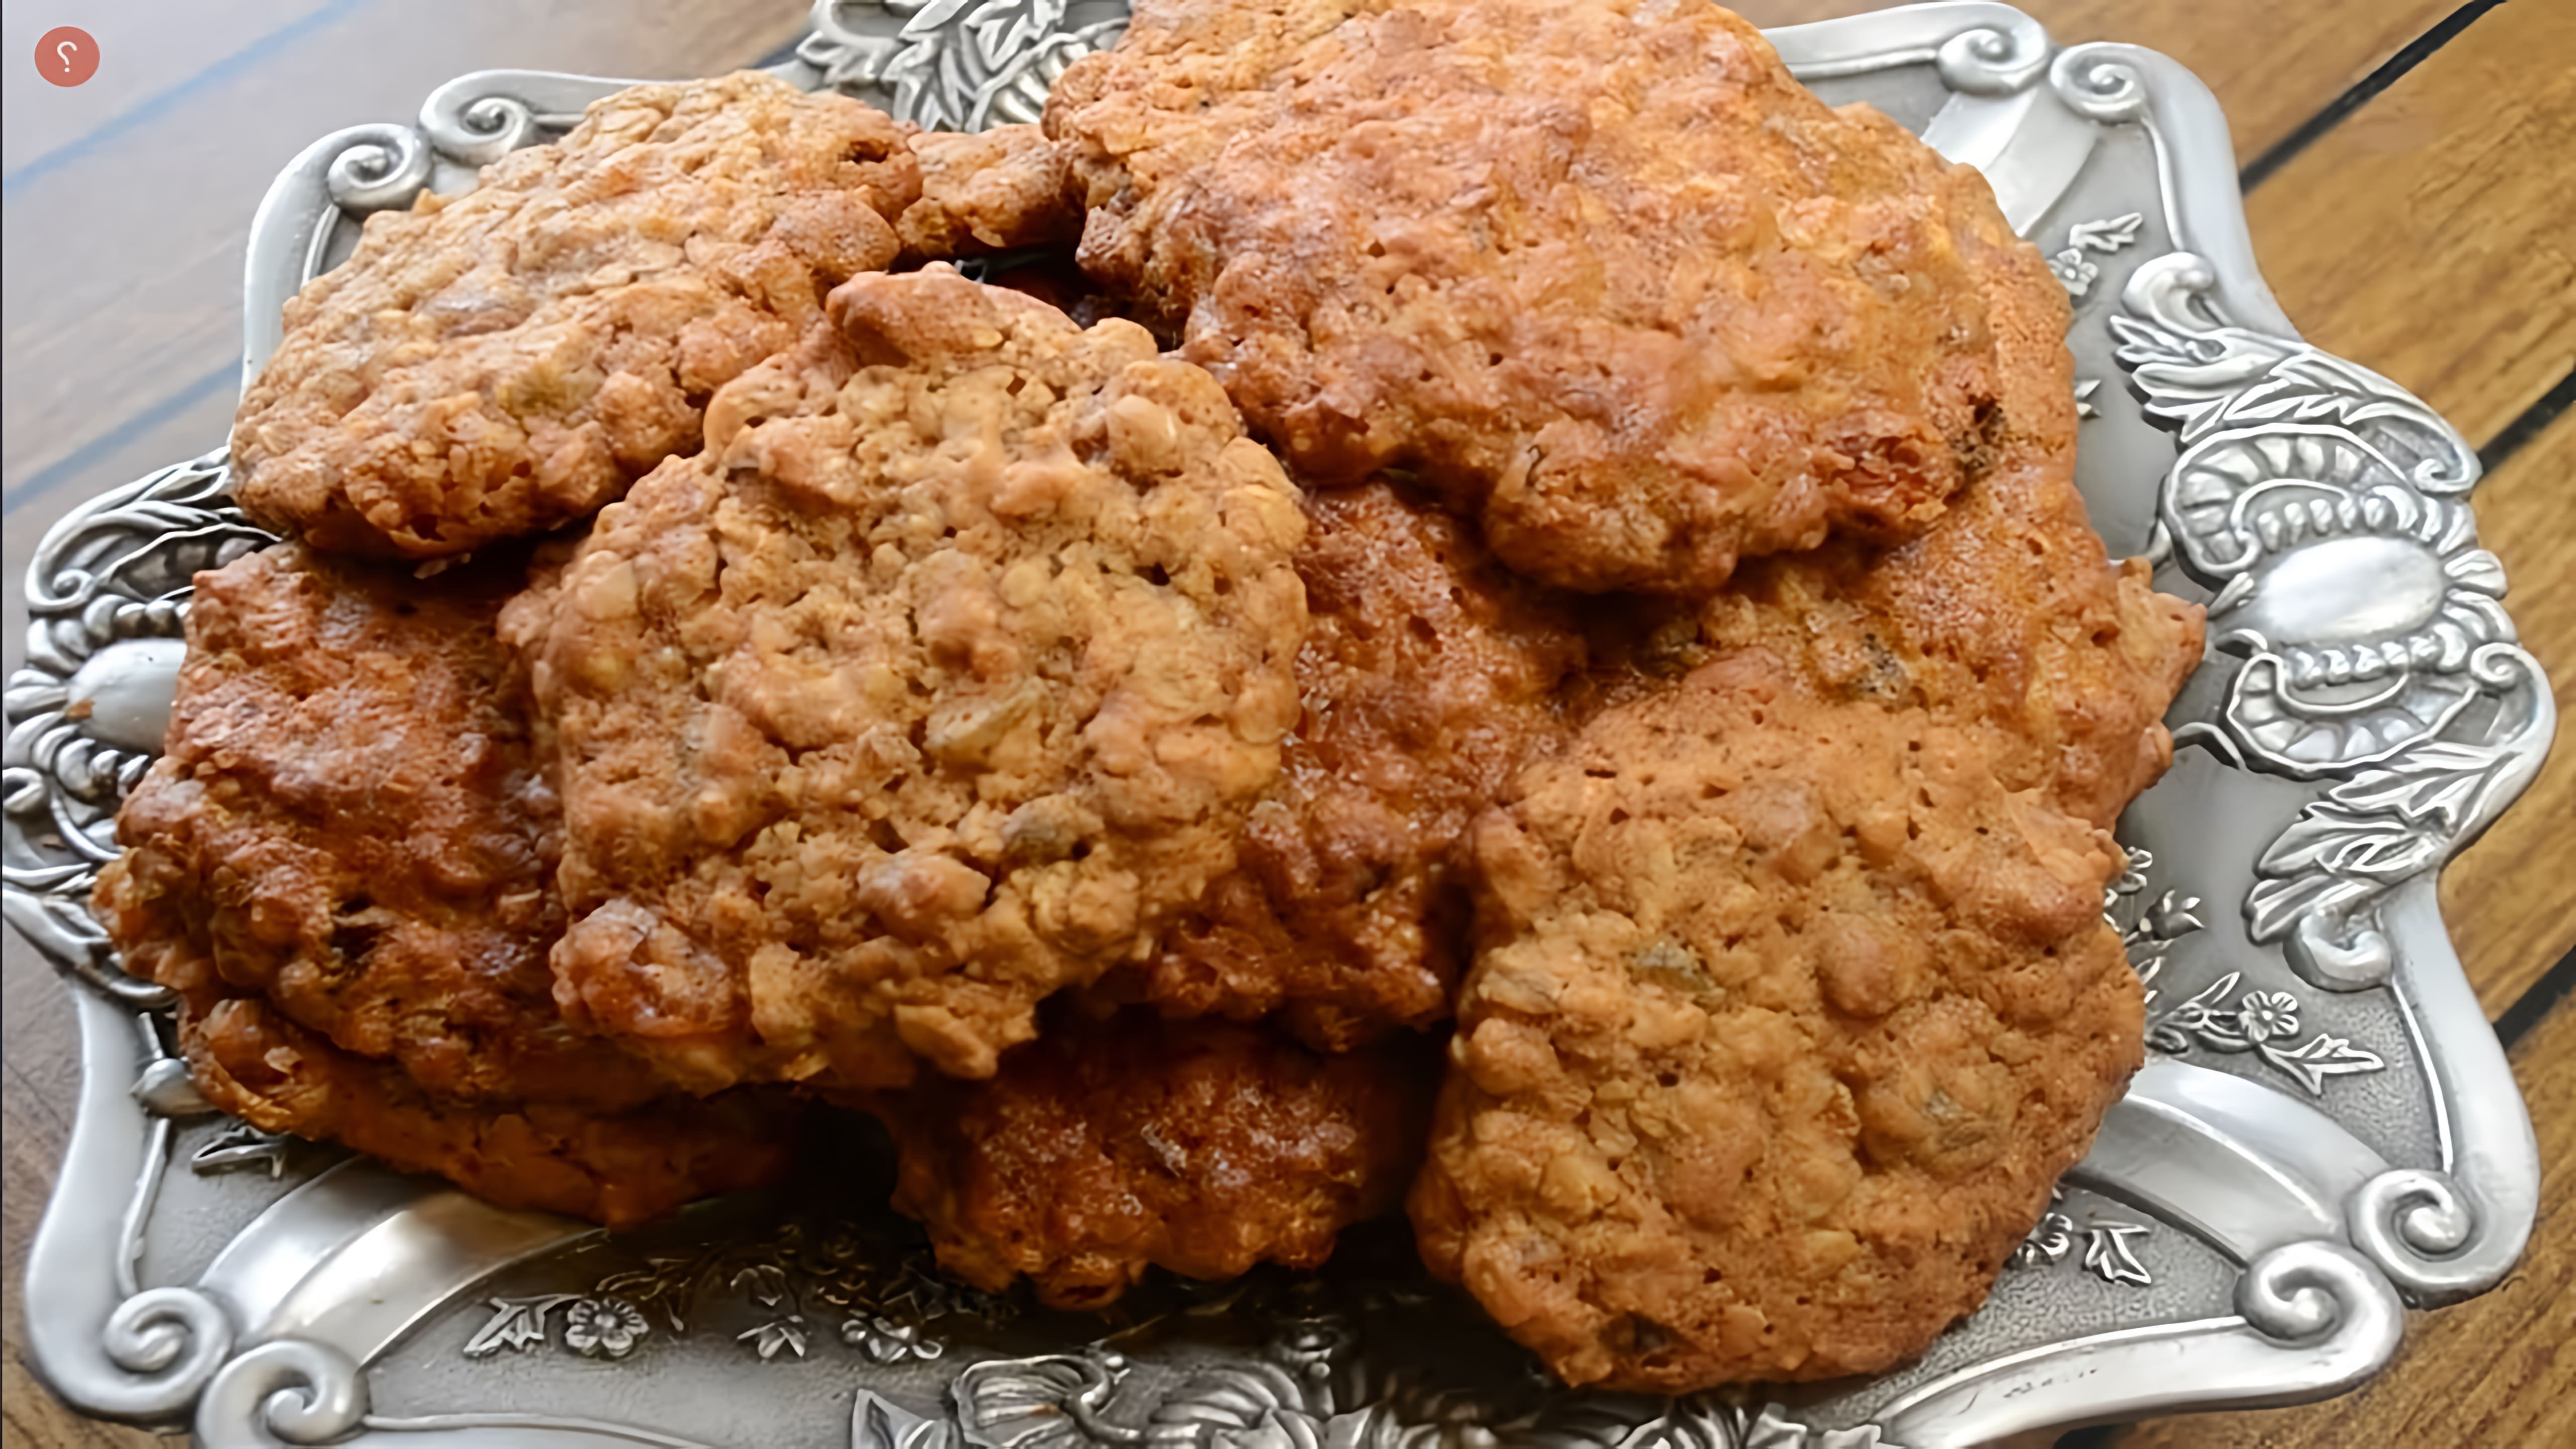 В этом видео демонстрируется рецепт приготовления овсяного печенья с орехами и изюмом